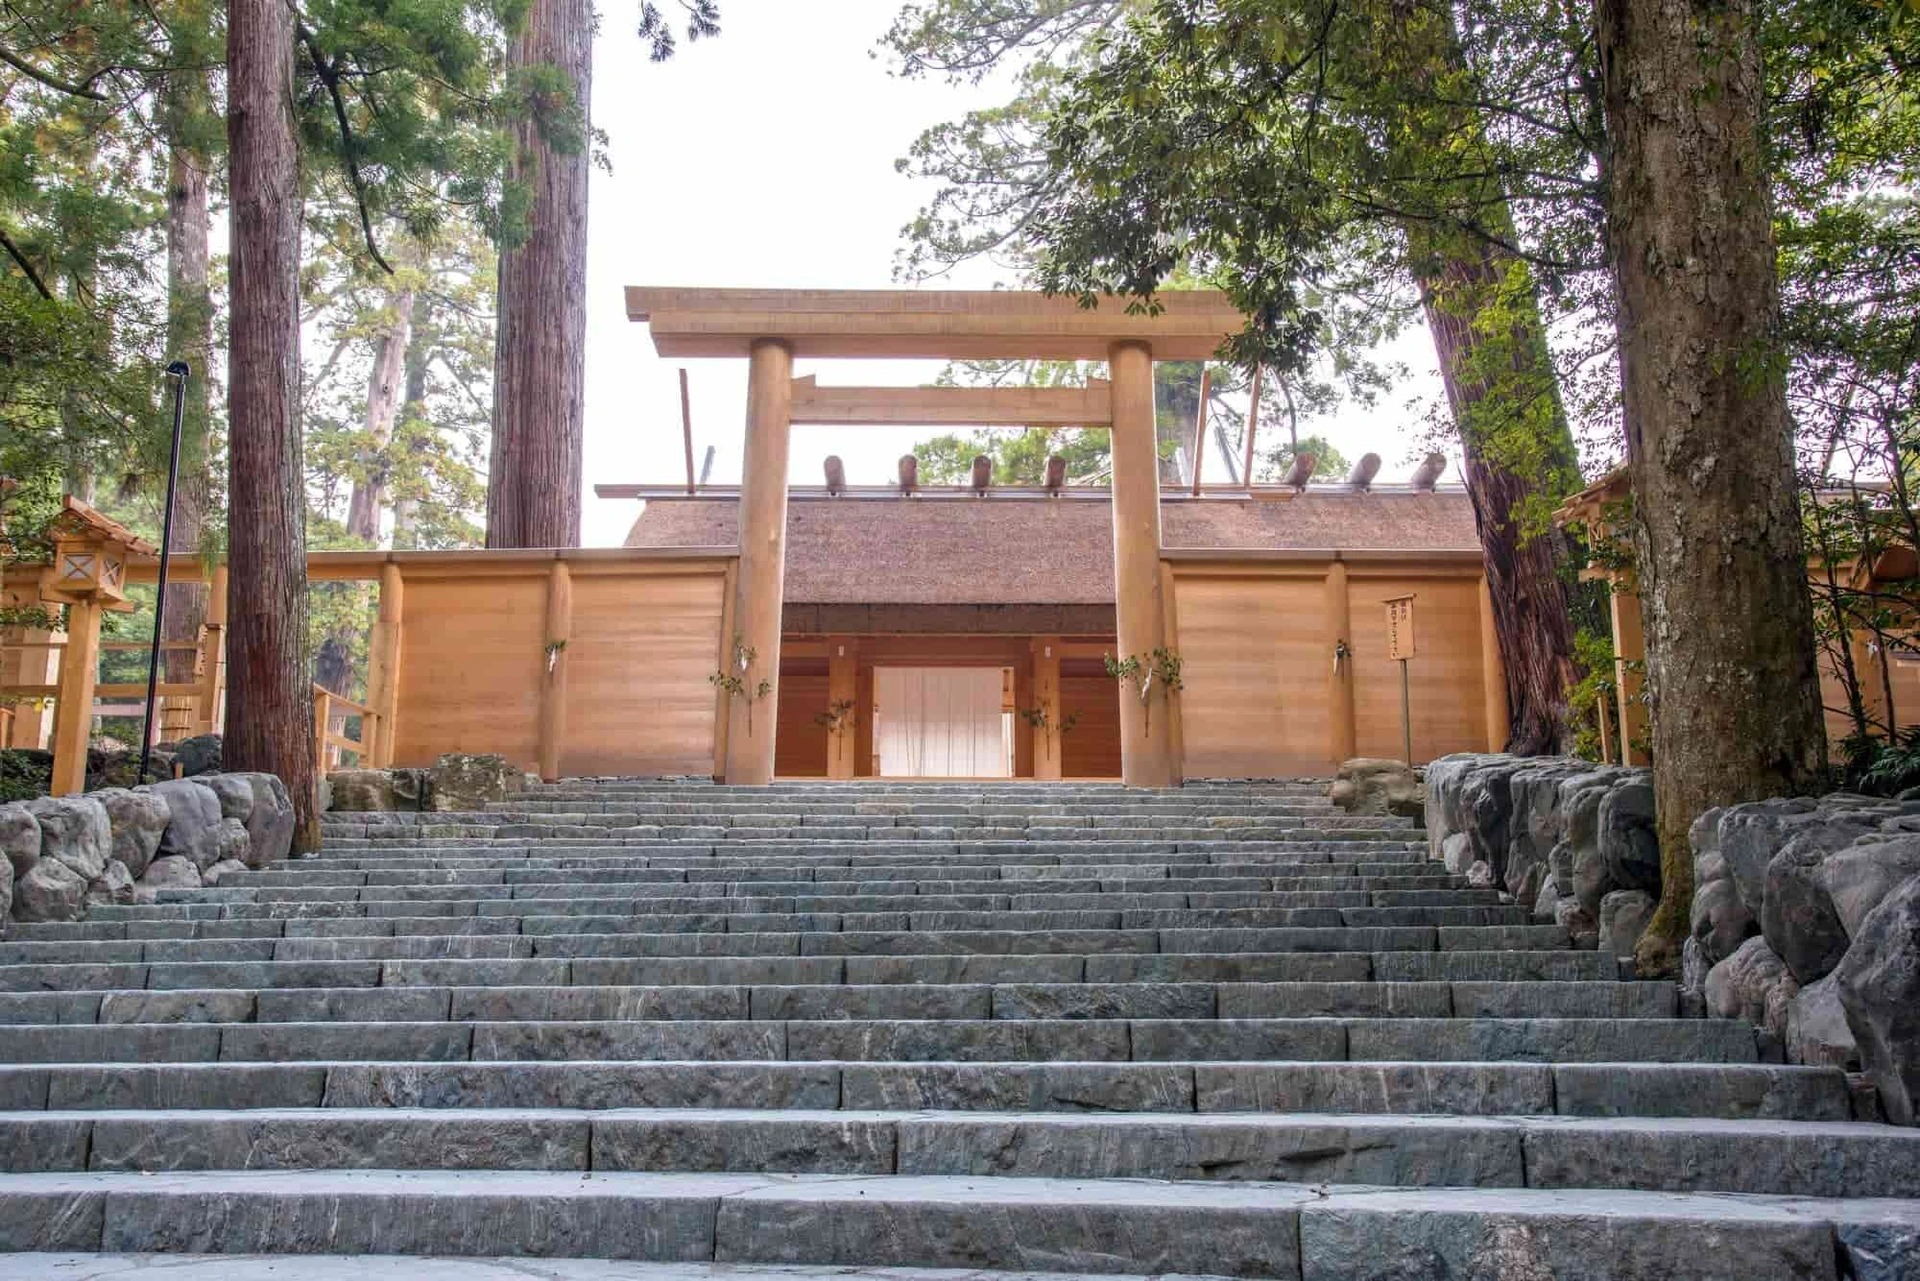 Kỳ lạ ngôi đền ở Nhật Bản cứ 20 năm được dỡ ra xây lại một lần - Ảnh 6.